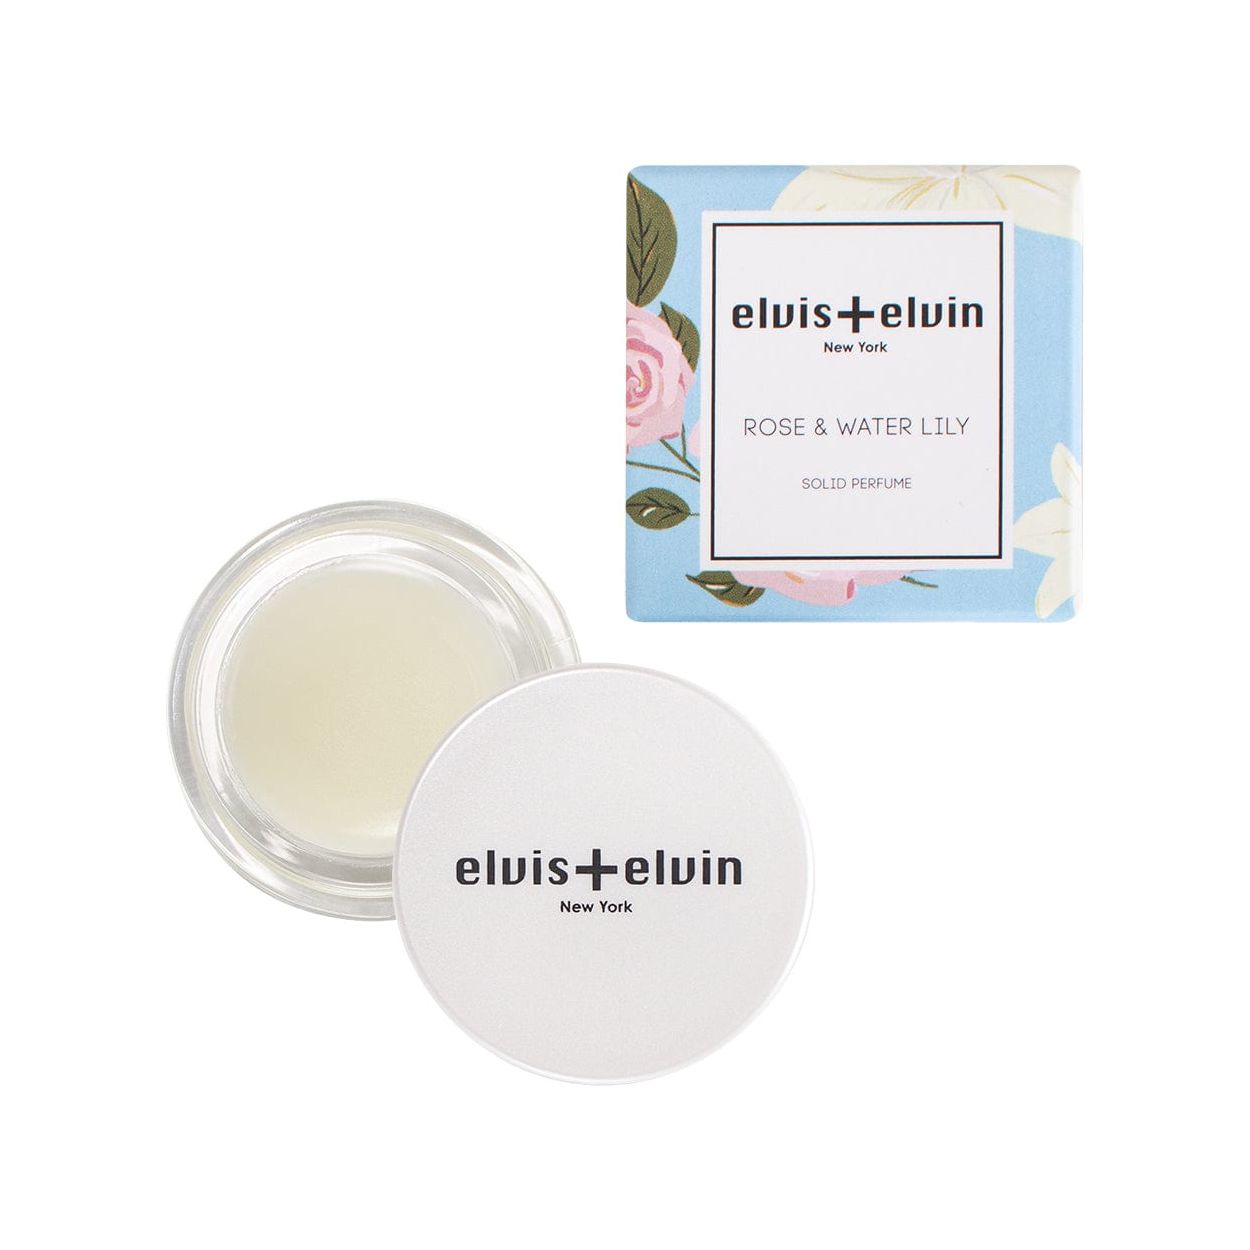 elvis+elvin Solid Perfume - Rose & Water Lily by elvis+elvin